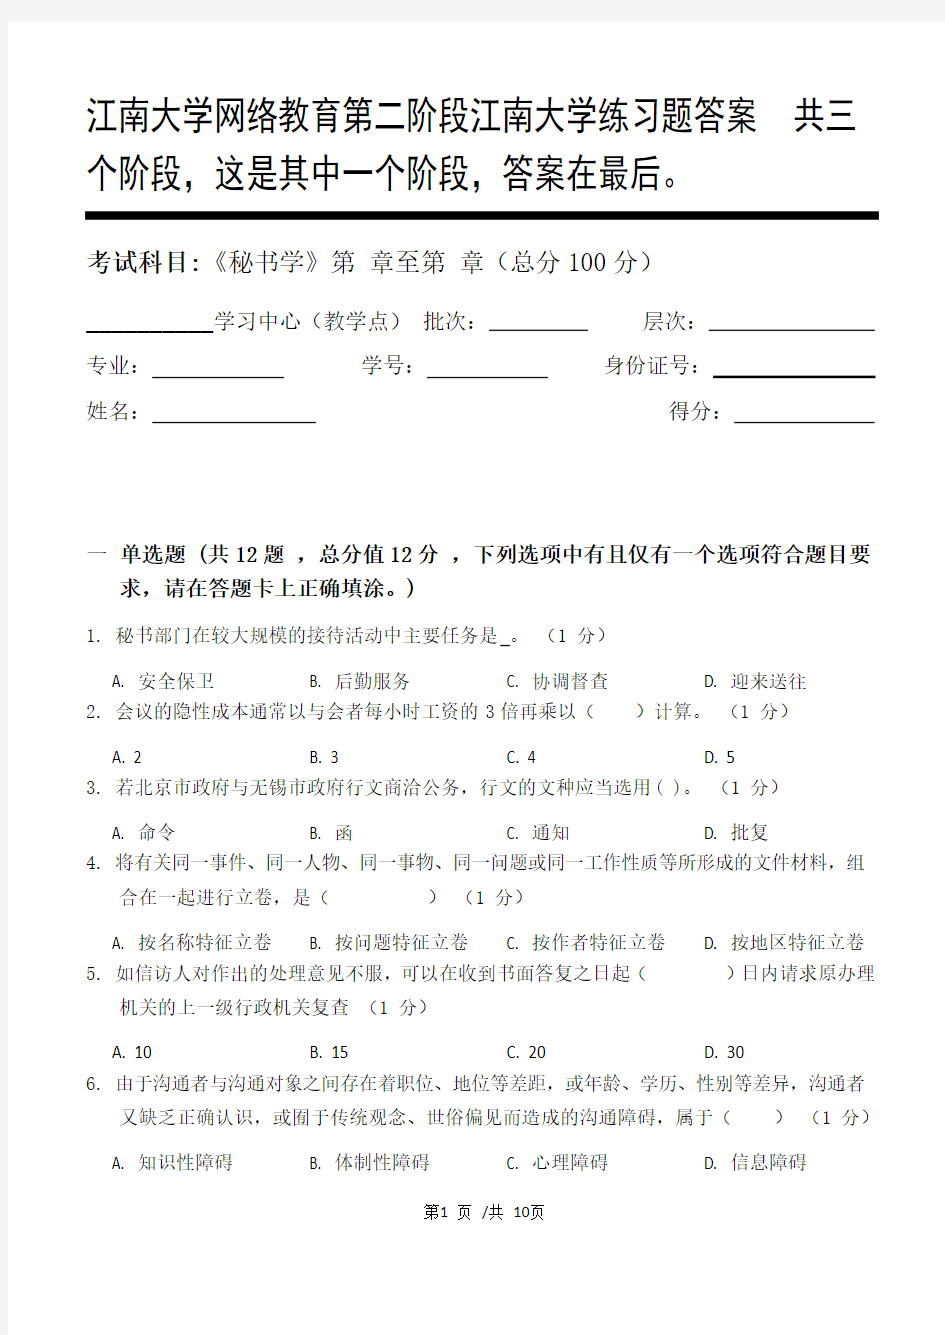 秘书学第2阶段江南大学练习题答案  共三个阶段,这是其中一个阶段,答案在最后。